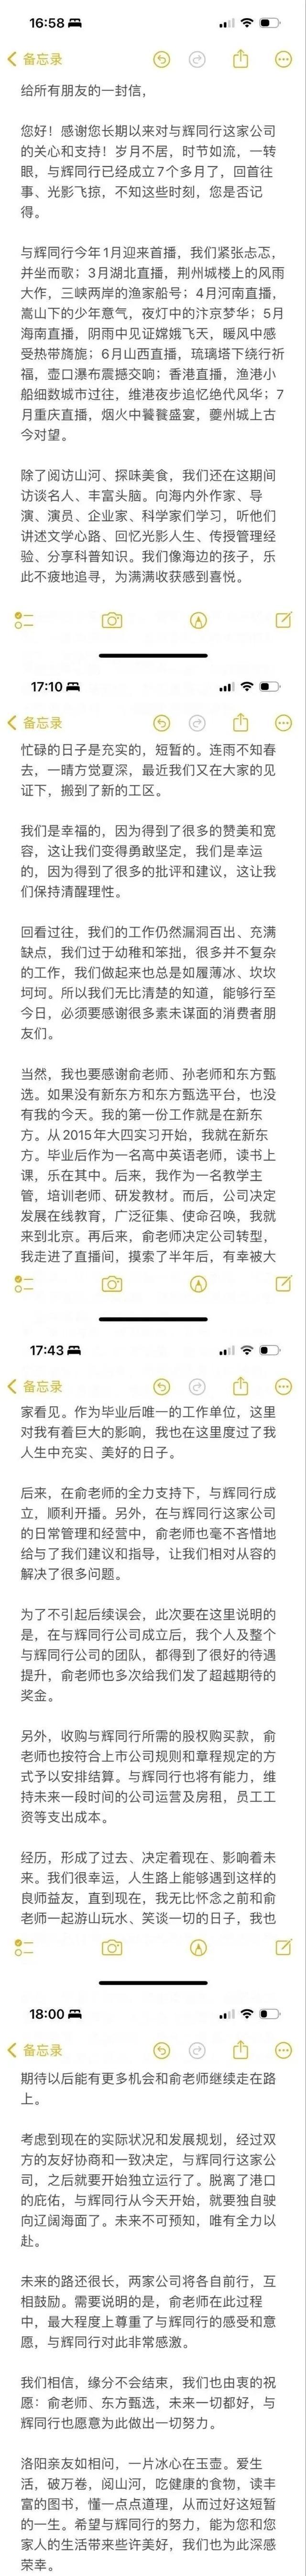 评论员：董宇辉如何保持热度成挑战——网红经济的稳定性考验